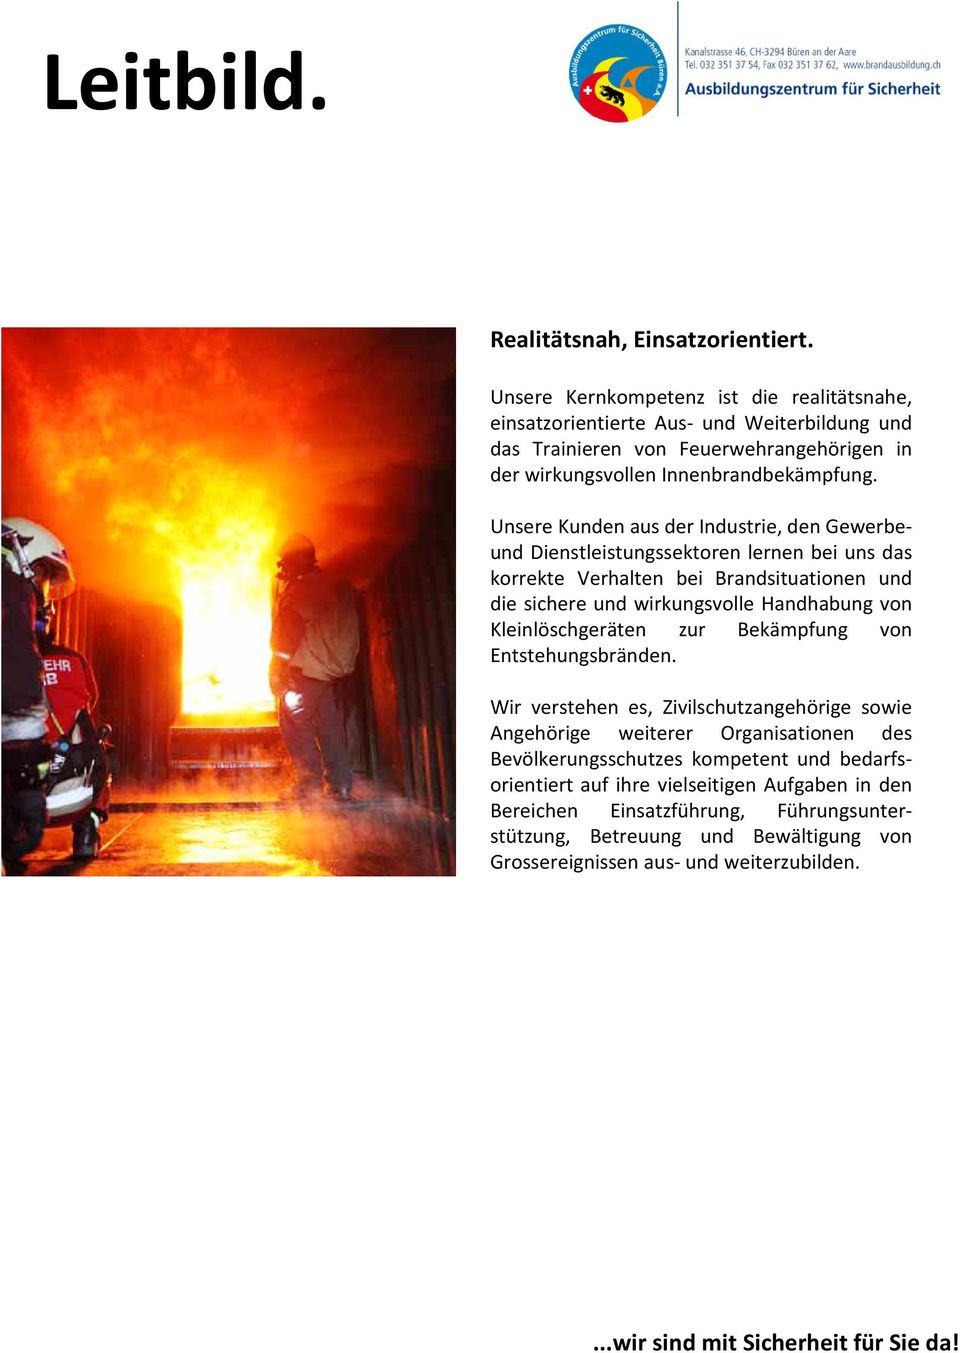 Unsere Kunden aus der Industrie, den Gewerbeund Dienstleistungssektoren lernen bei uns das korrekte Verhalten bei Brandsituationen und die sichere und wirkungsvolle Handhabung von